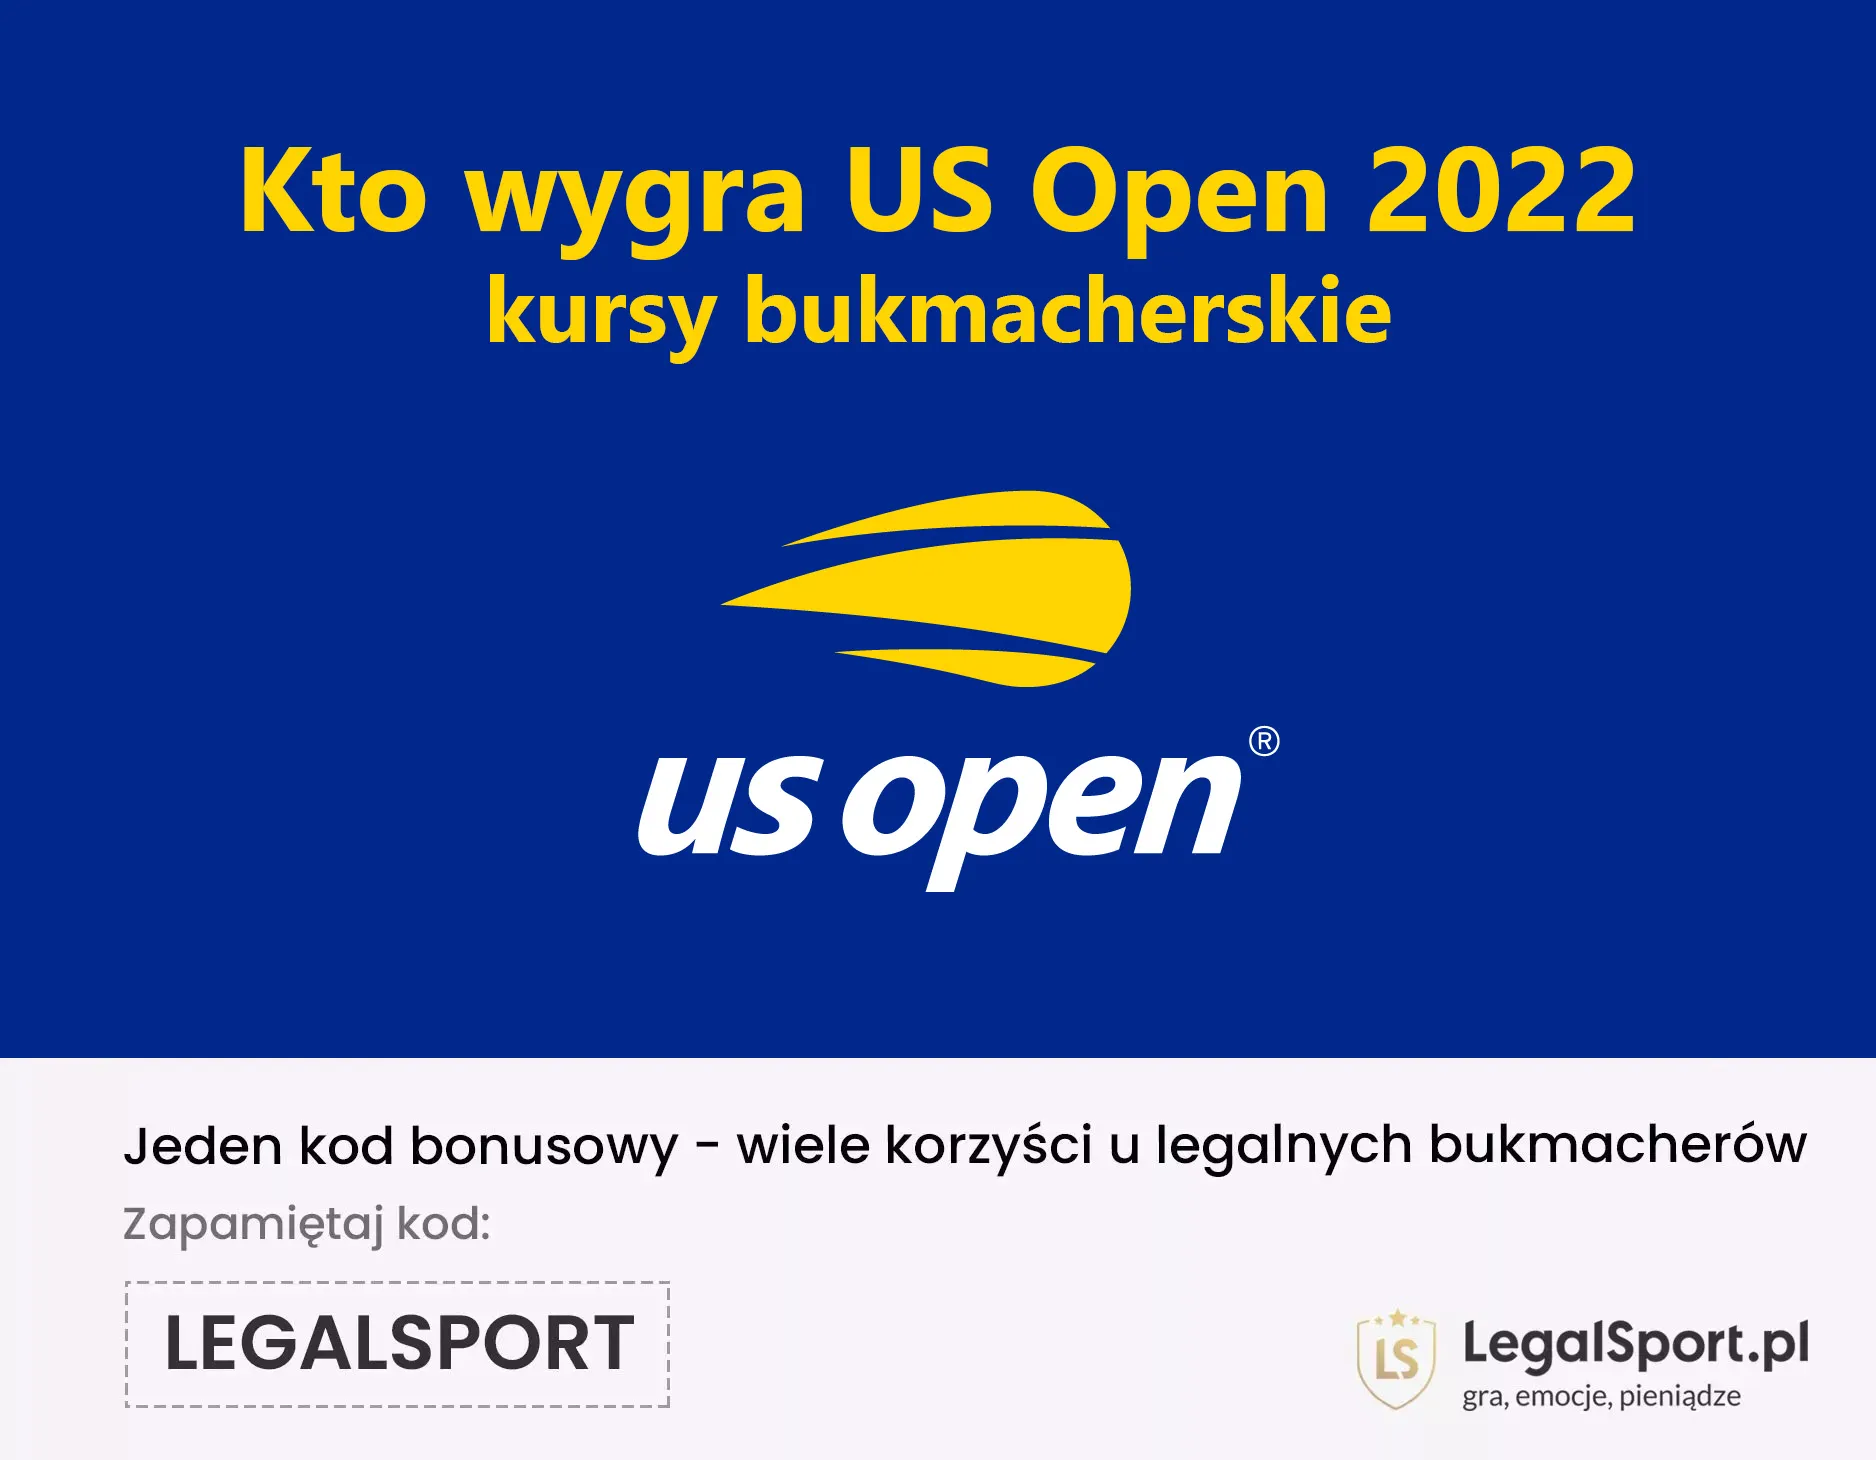 Kto wygra US Open 2022: kursy bukmacherskie